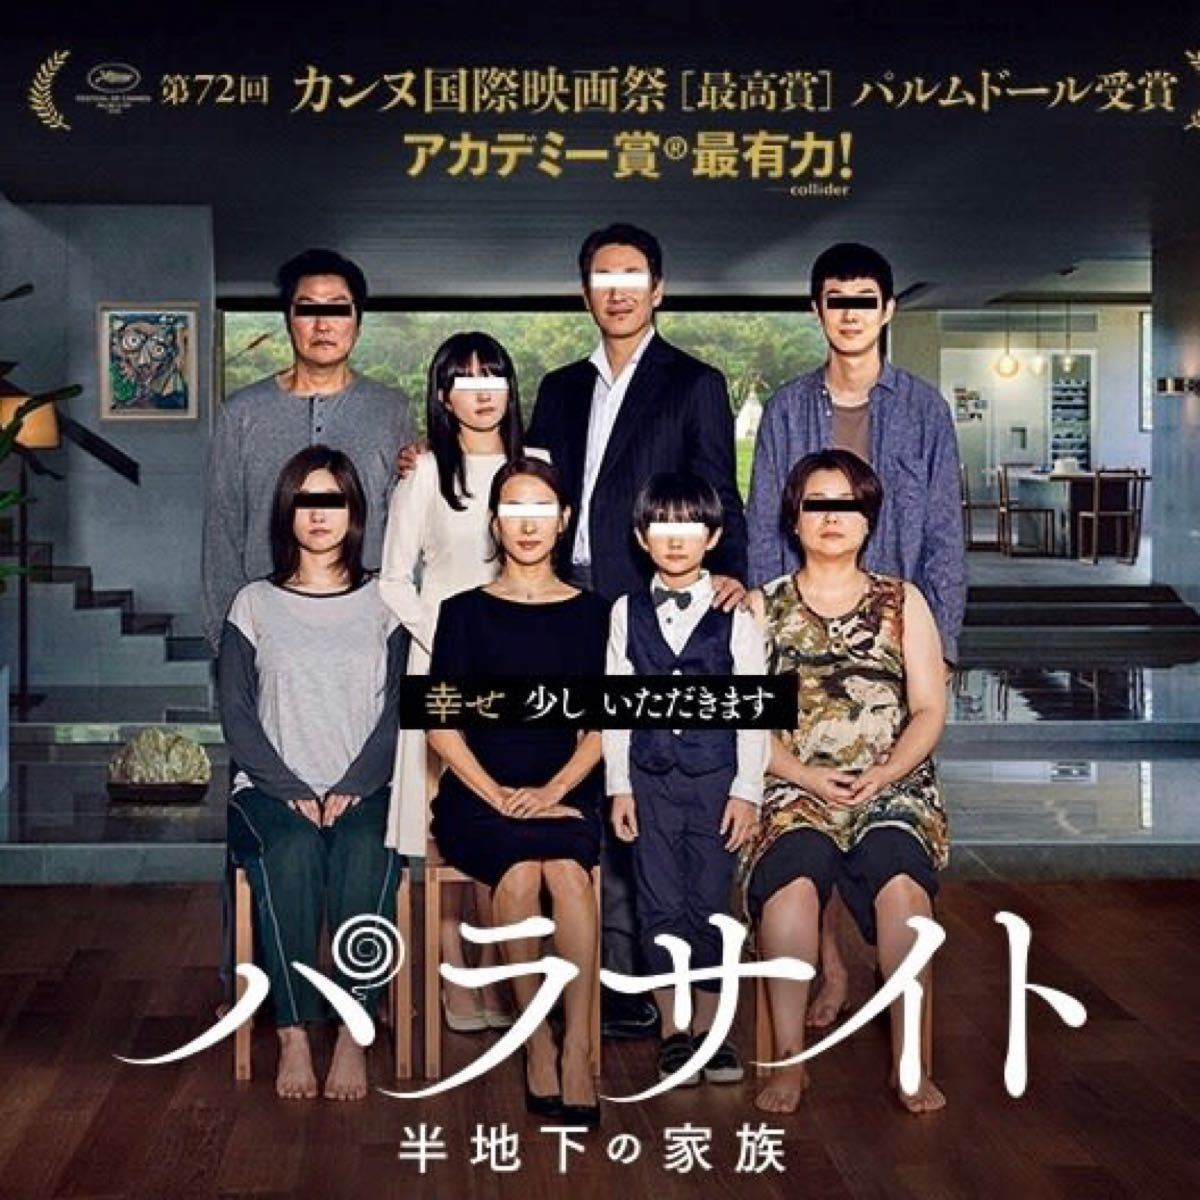 韓国映画  パラサイト  半地下の家族  DVD  日本語吹替有り  レーベル有り  ソン・ガンホ  